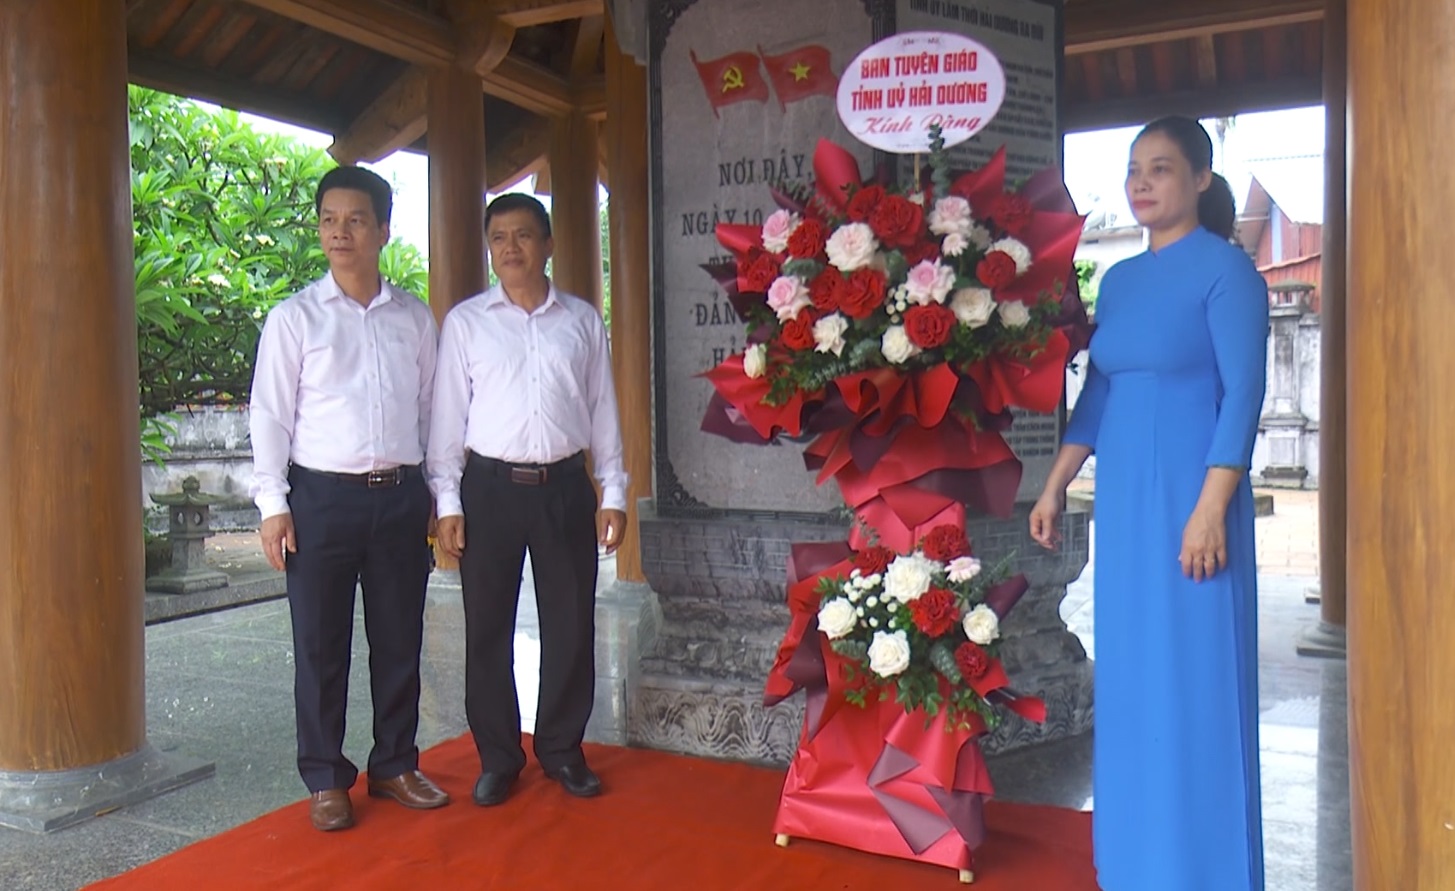 Dâng hoa, dâng hương nhân kỷ niệm 83 năm thành lập Đảng bộ tỉnh